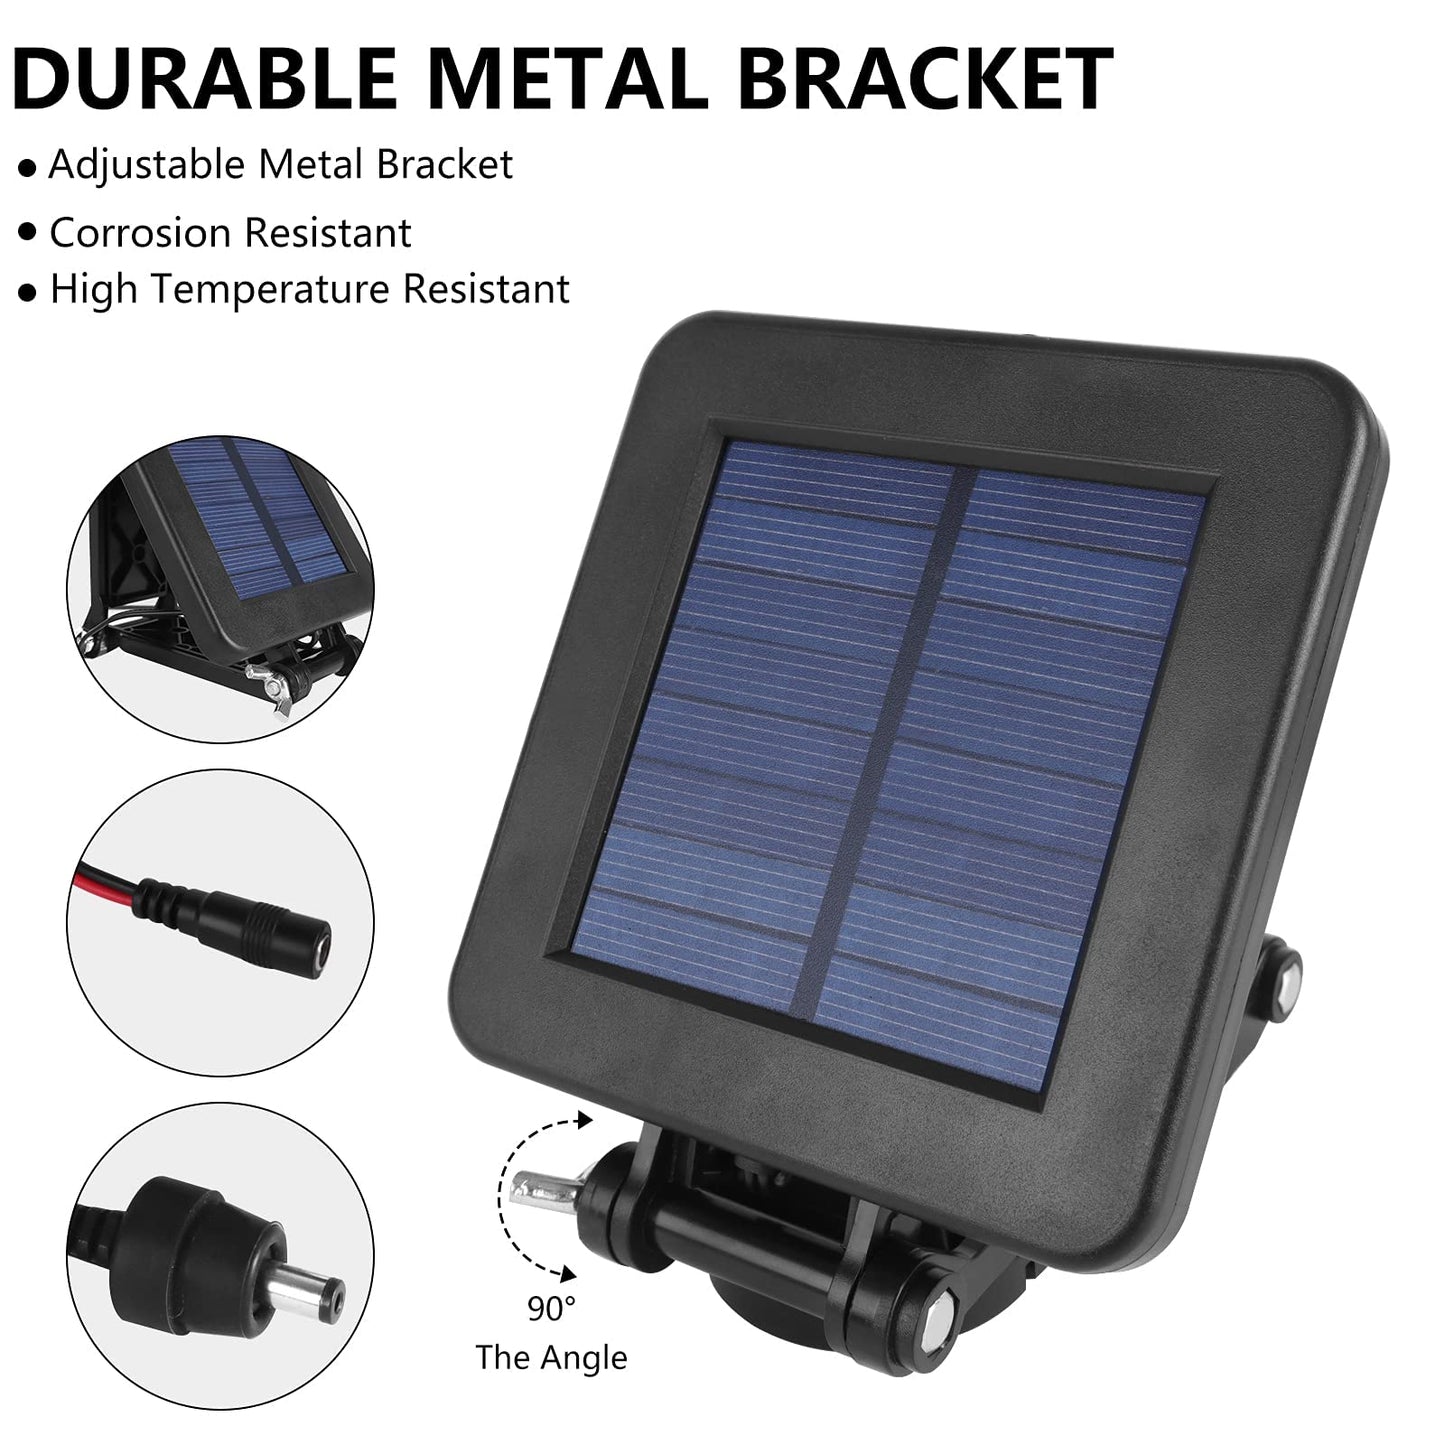 6V Solar Panel for Deer Feeder, Efficient Solar Panel Charger w/Adjustable Mounting Bracket & Alligator Clips, 6V Solar Panel Compatible with Game